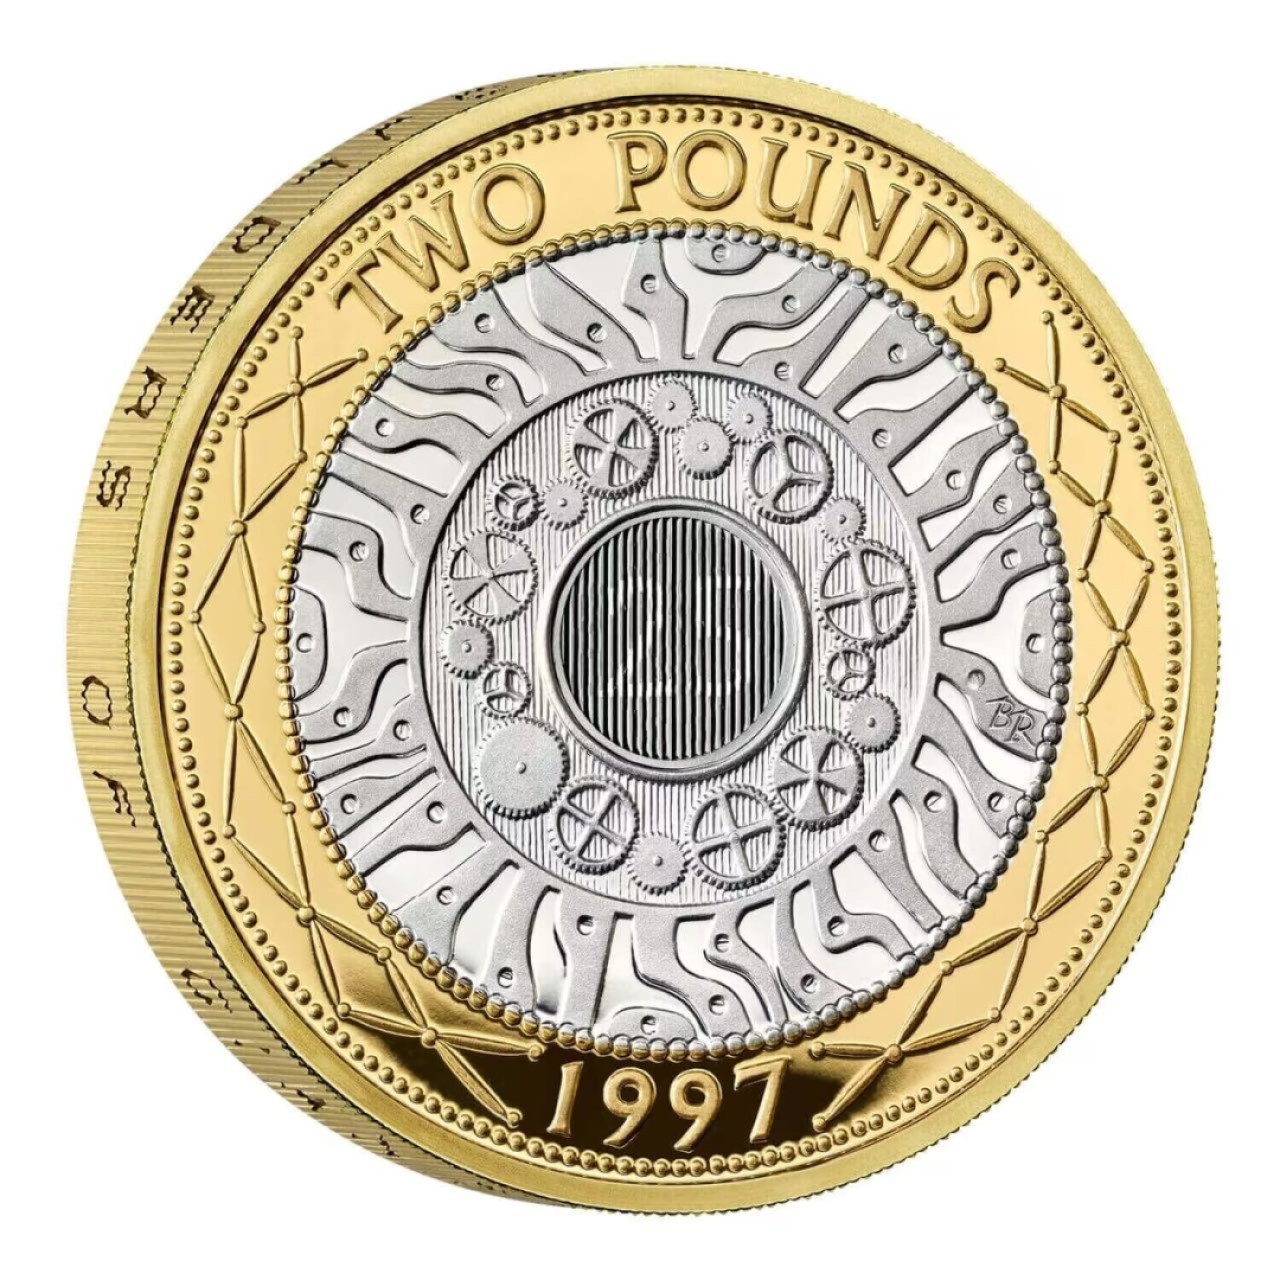 【新币赏析】【英国】庆祝2英镑发行25周年